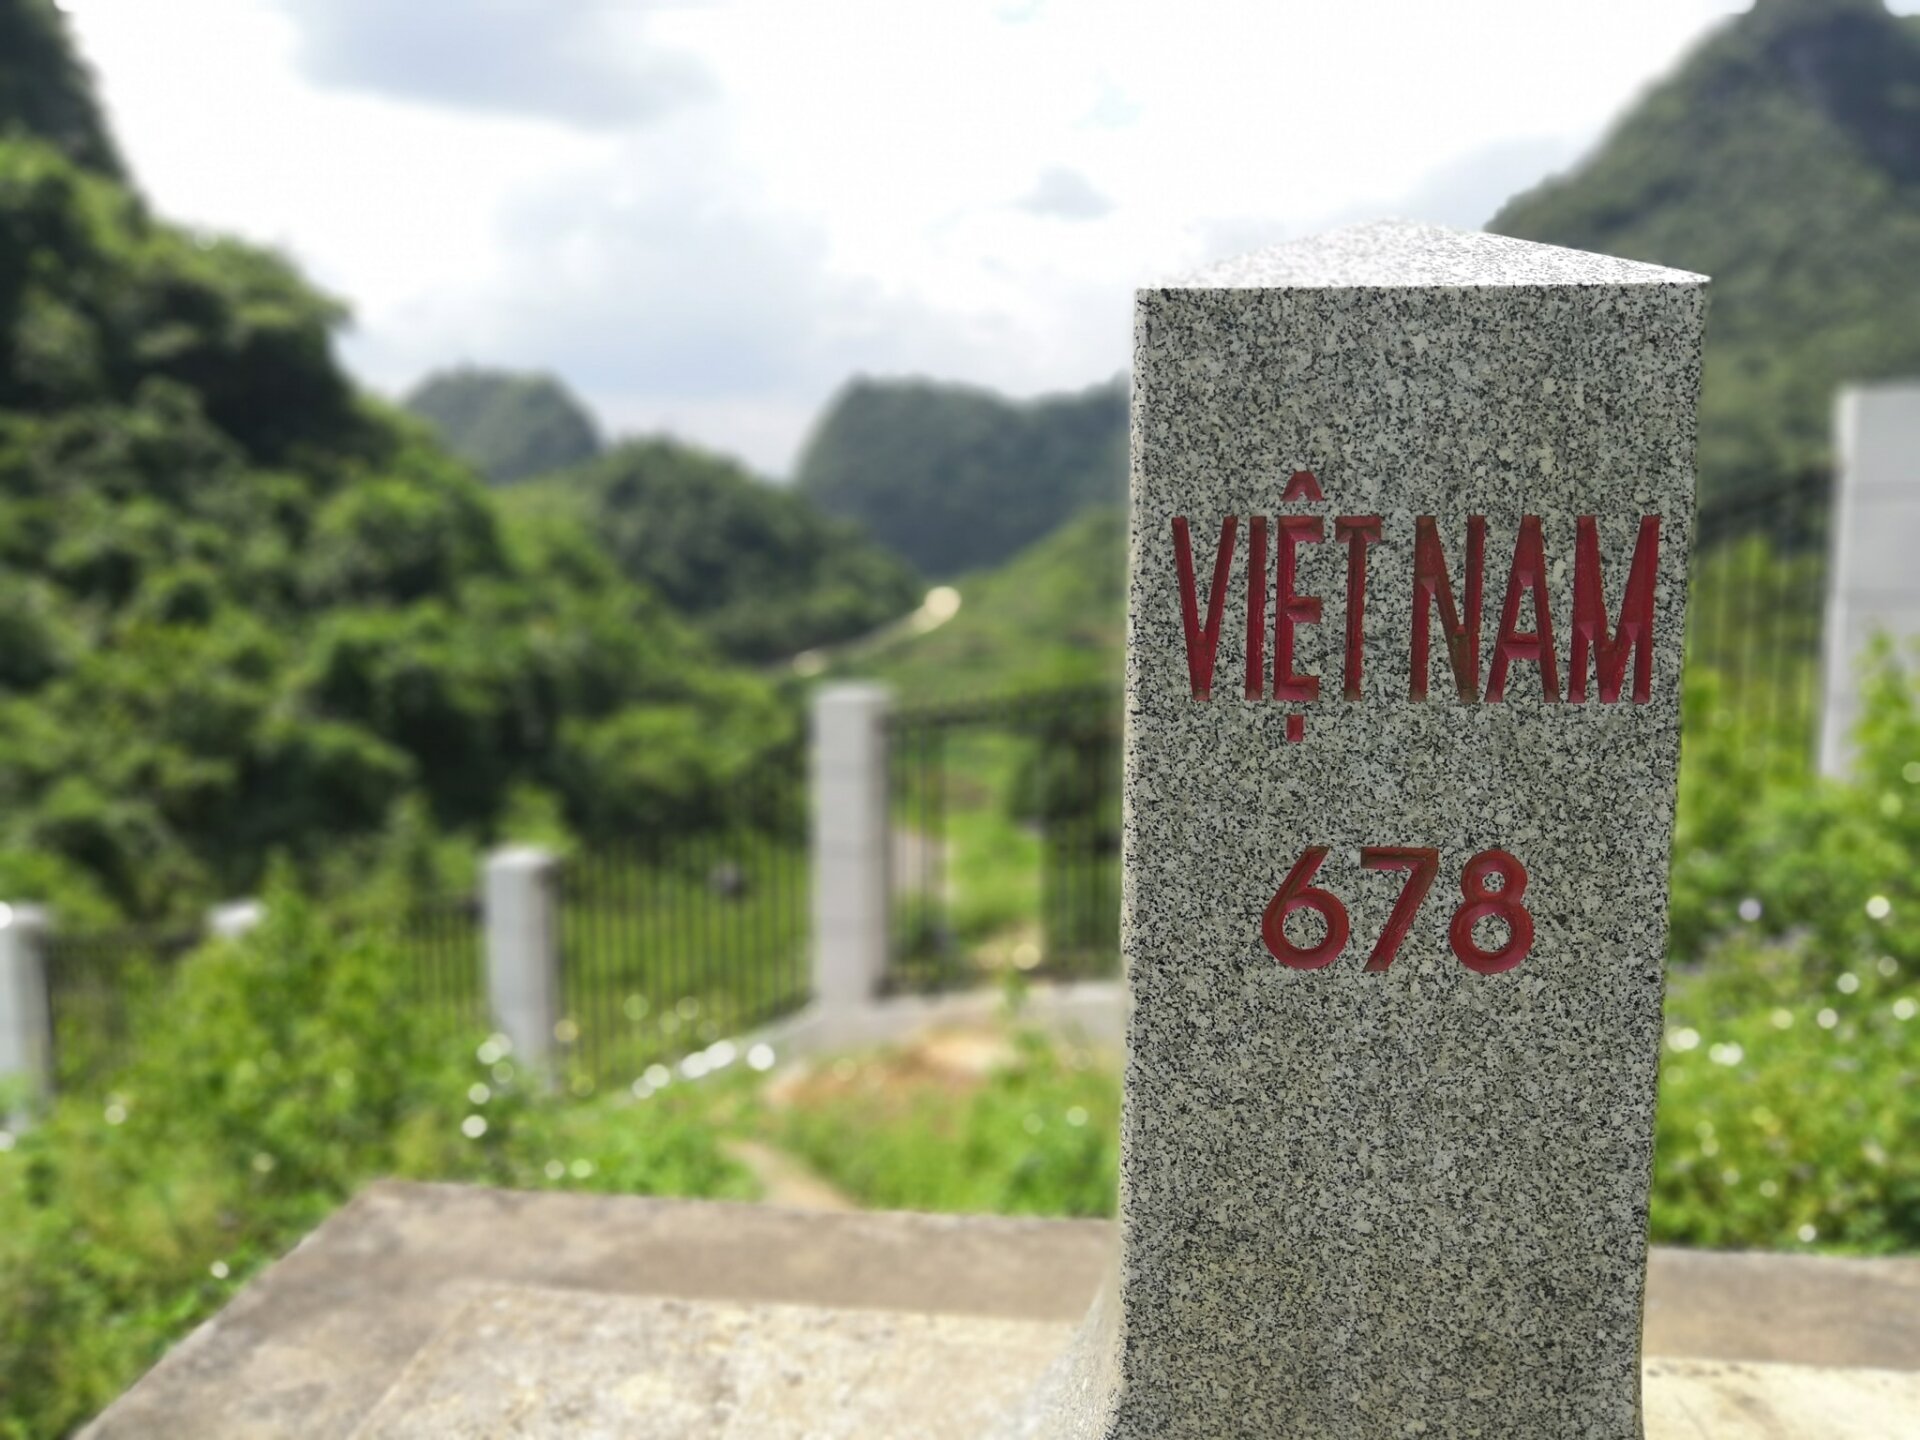 Cao Bằng chính là tỉnh có đường biên giới dài nhất Việt Nam. (Nguồn ảnh: Internet)